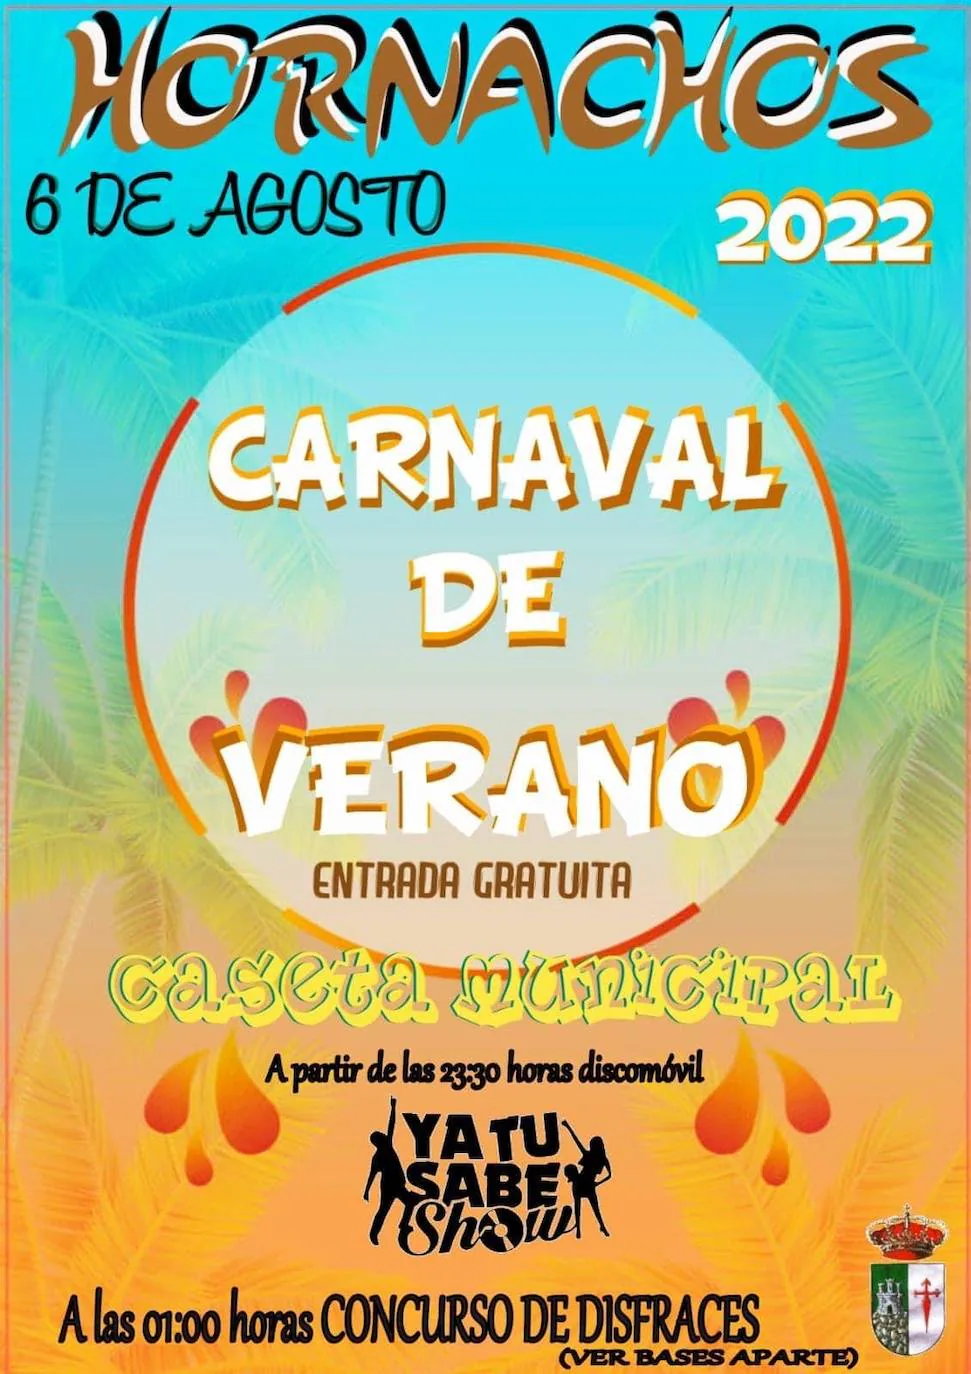 La localidad recupera su Carnaval de Verano este sábado 6 de Agosto